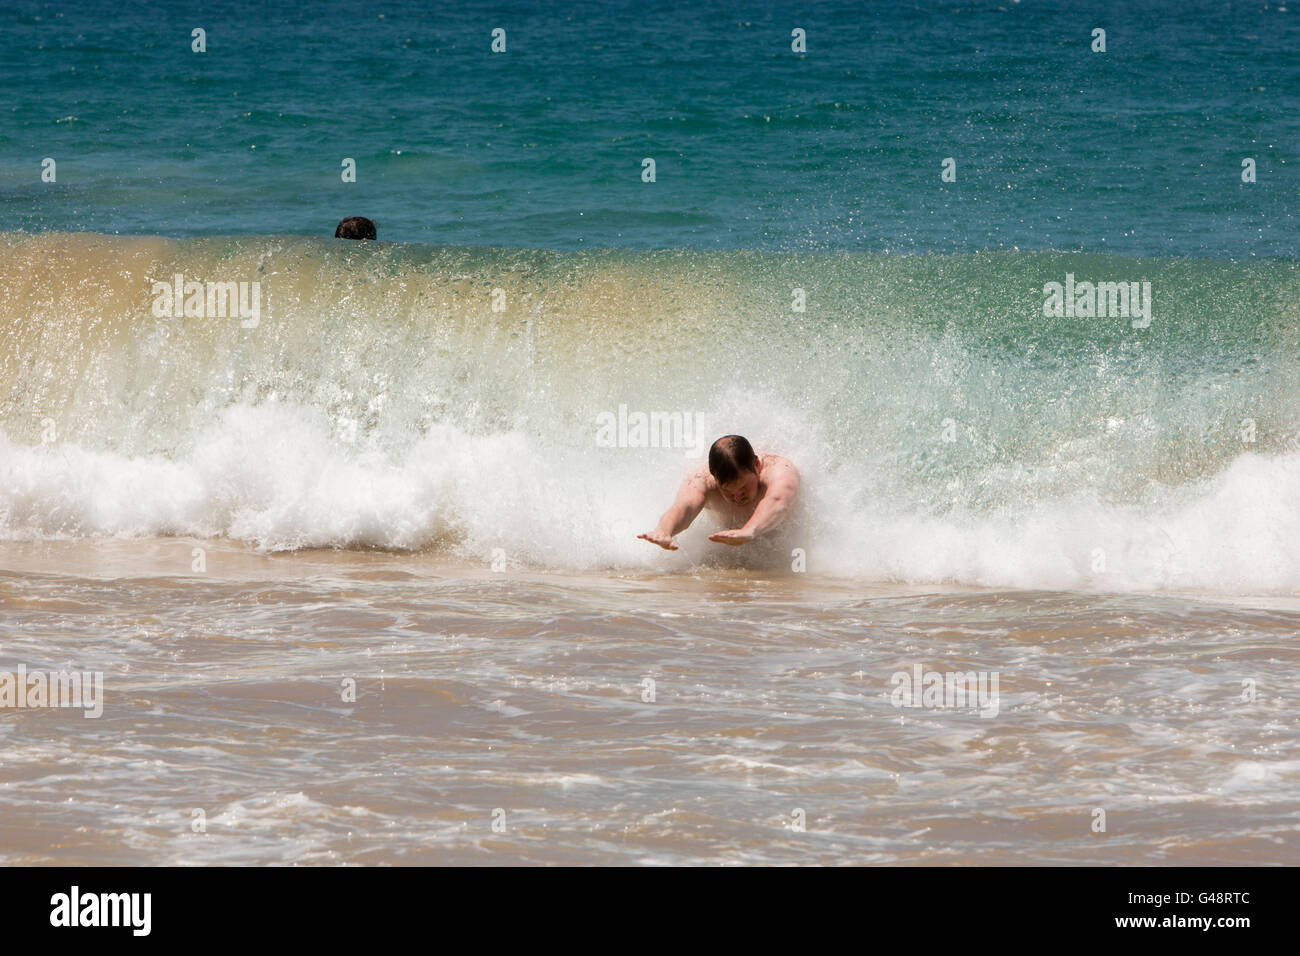 Sri Lanka, Mirissa beach, l'homme du body surfing dans la puissante vague Banque D'Images